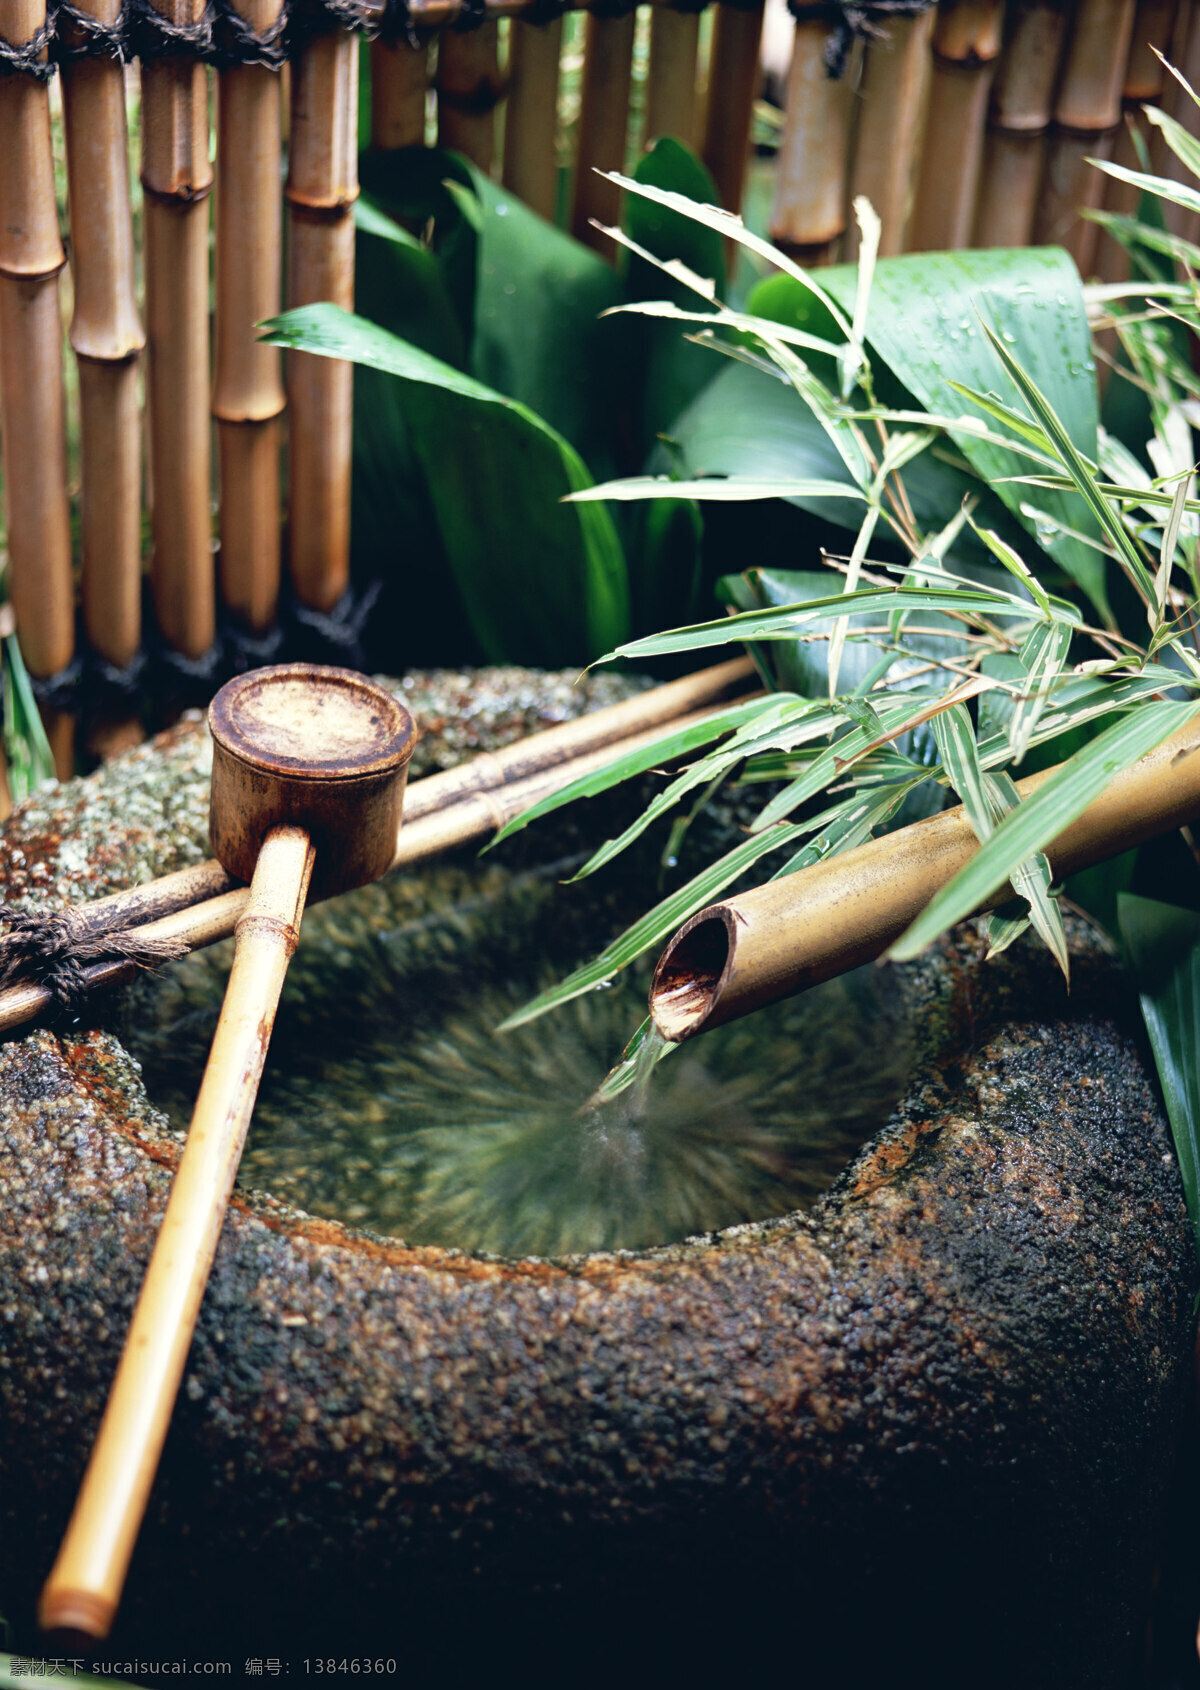 石头水缸 水缸 石头 竹筒 竹管 流水 水瓢 竹瓢 植物 绿叶 竹排 栅栏 围墙 围挡 生活意境摄影 生活百科 生活素材